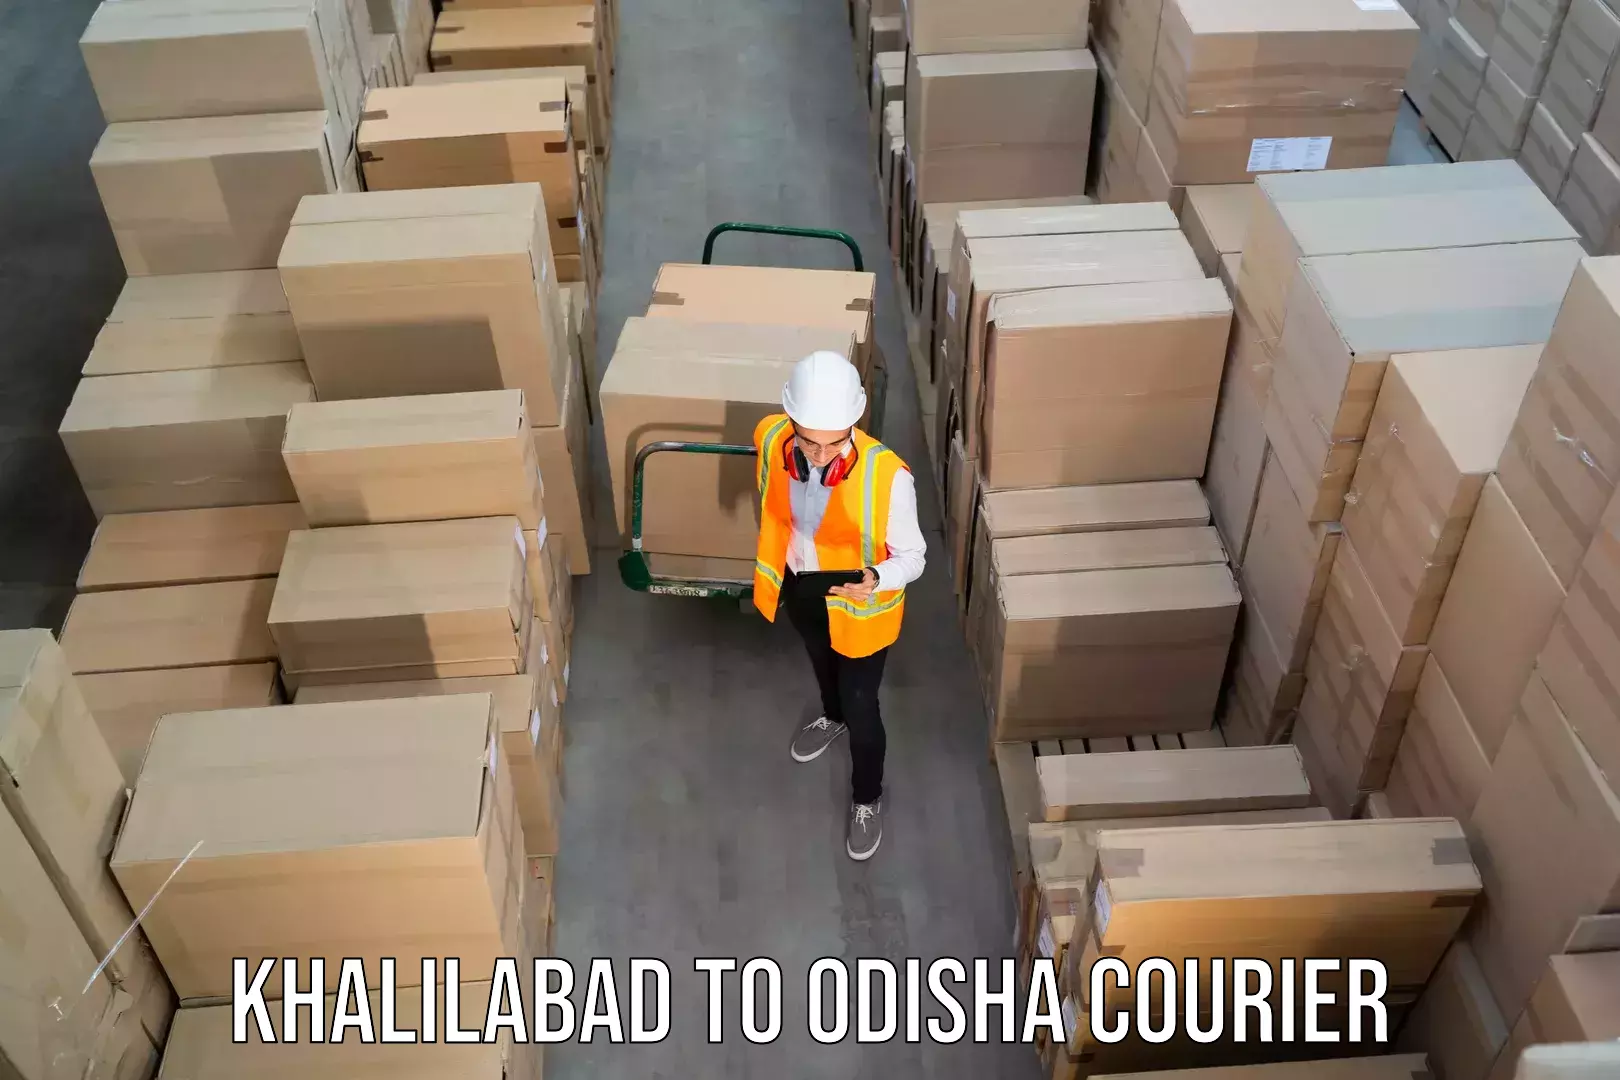 Global shipping solutions Khalilabad to Kishorenagar